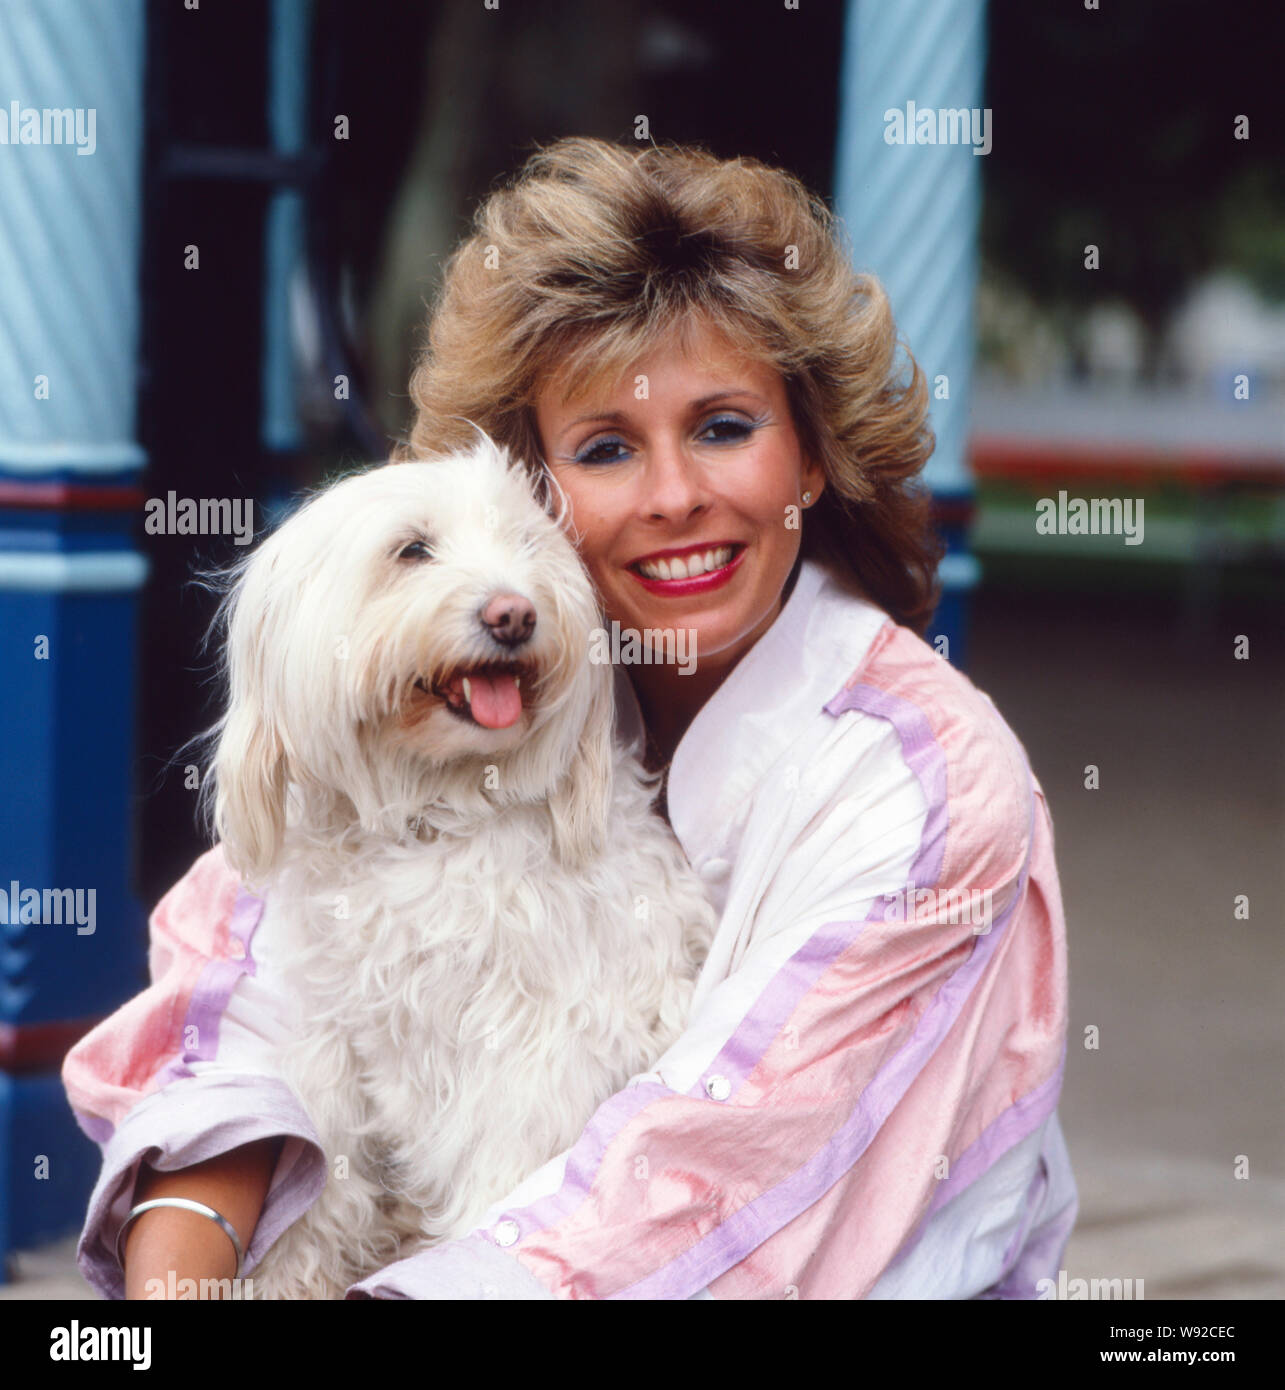 Die deusch-britische Schlagersängerin Ireen Sheer posiert mit ihrem langhaarigen Tibet-Terrier in den 1990er Jahren. Il Deusch-British cantante pop Ireen Sheer pone con i suoi lunghi capelli Tibetan Terrier negli anni novanta. Foto Stock